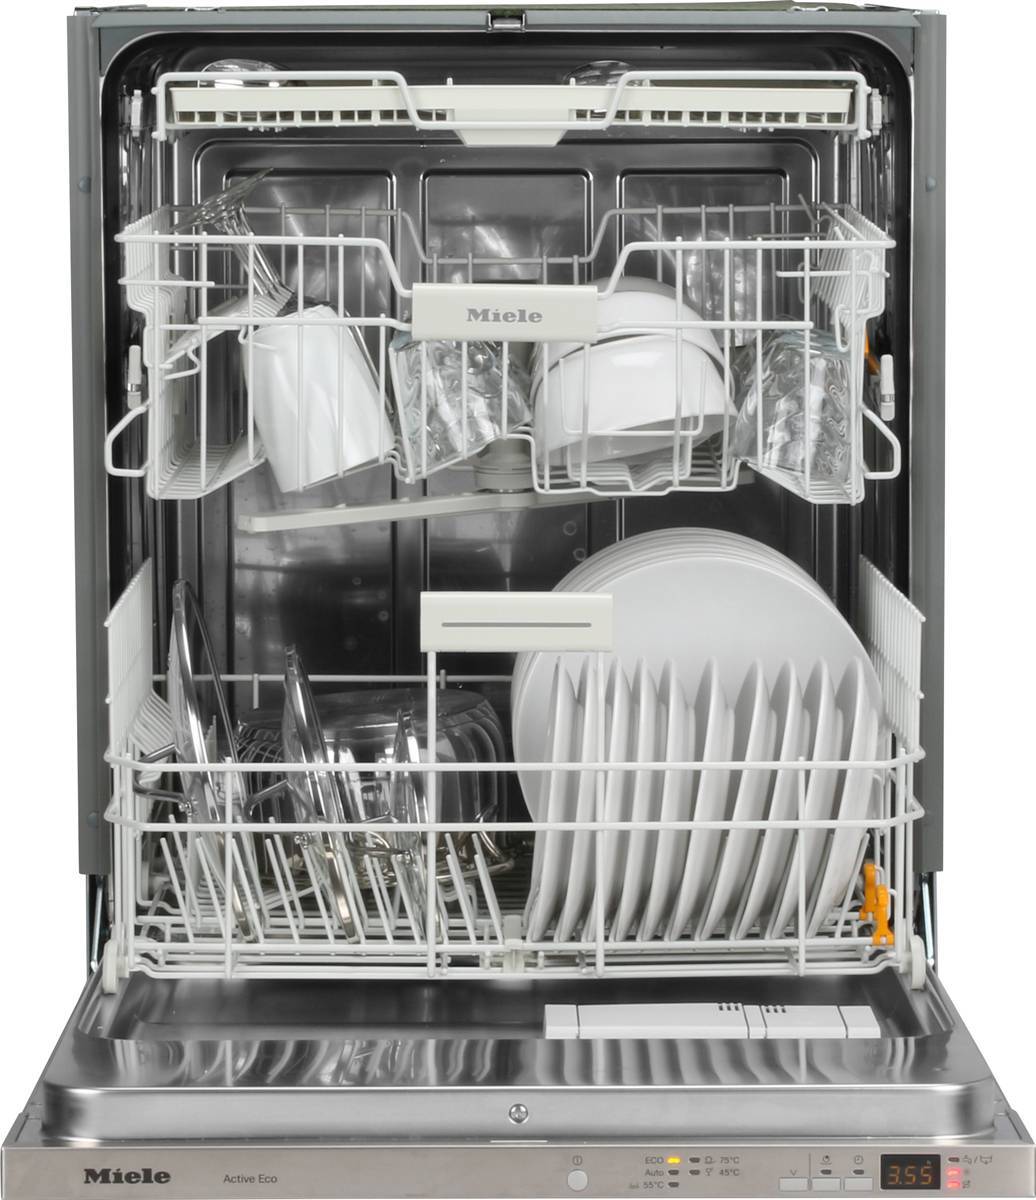 Топ-5 посудомоечных машин miele - рейтинг 2020-2021 года, технические характеристики, плюсы и минусы, отзывы покупателей и рекомендации по выбору